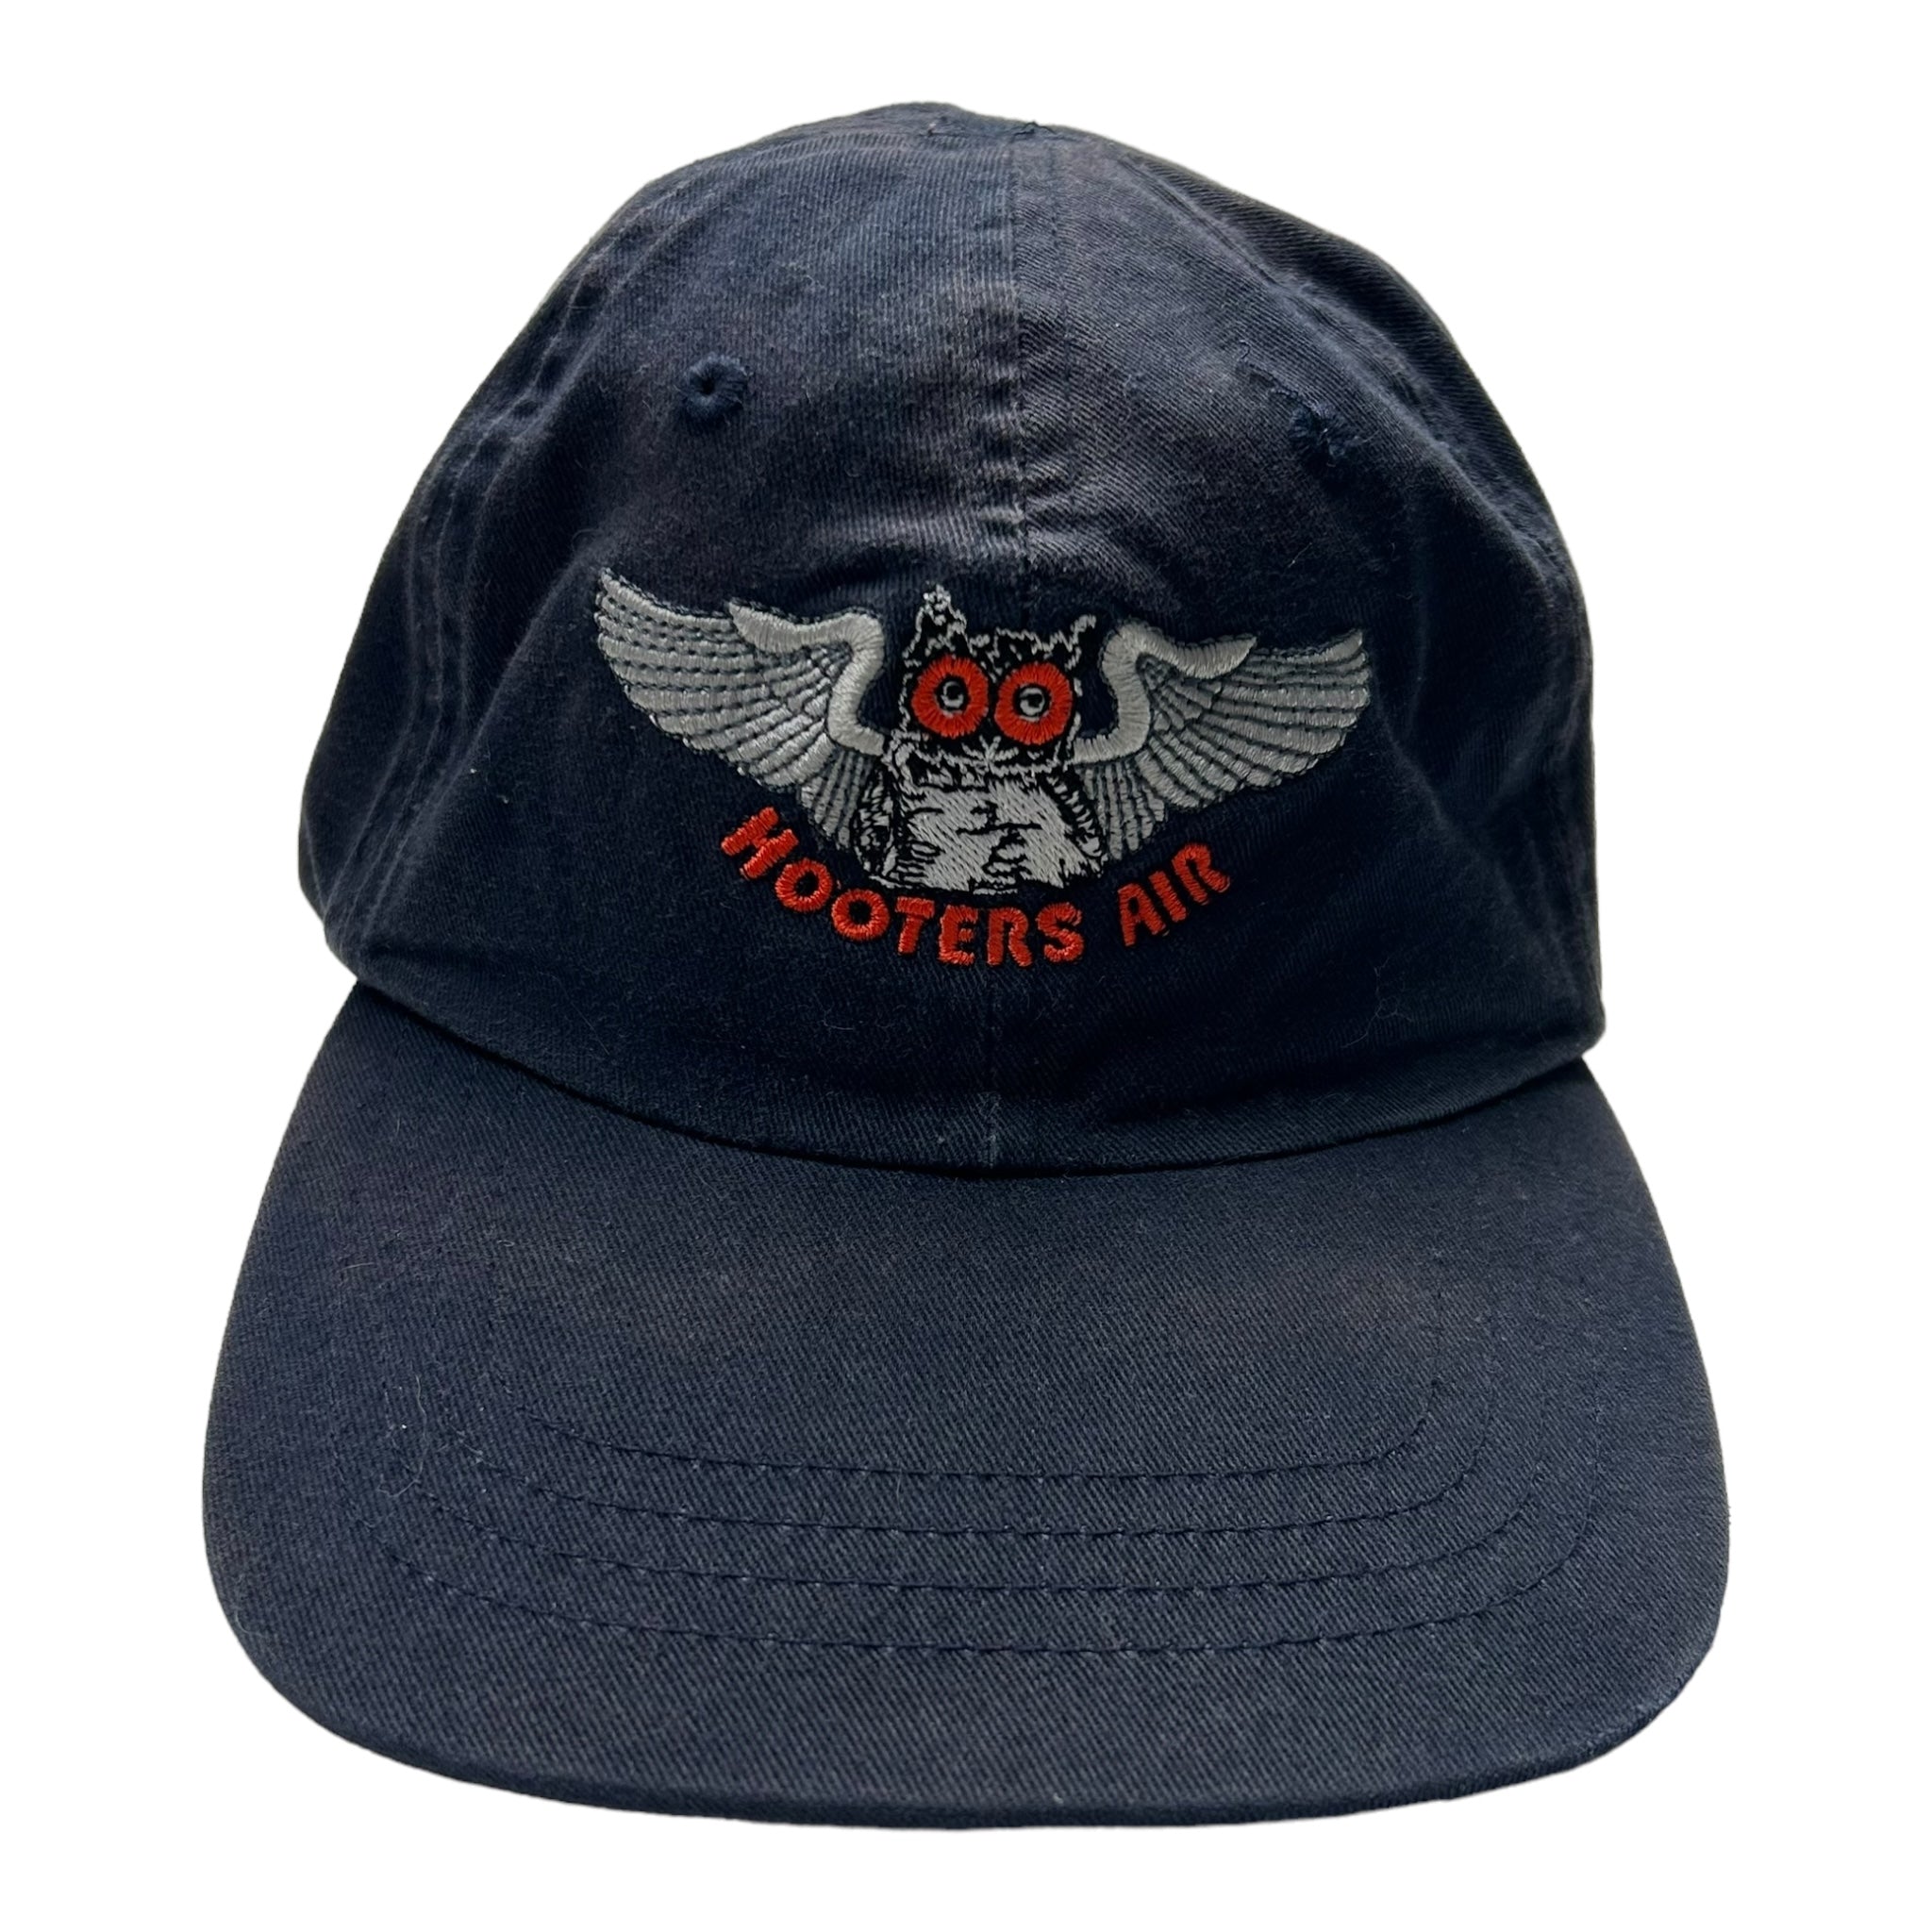 Vintage “Hooters Air” Dad Hat